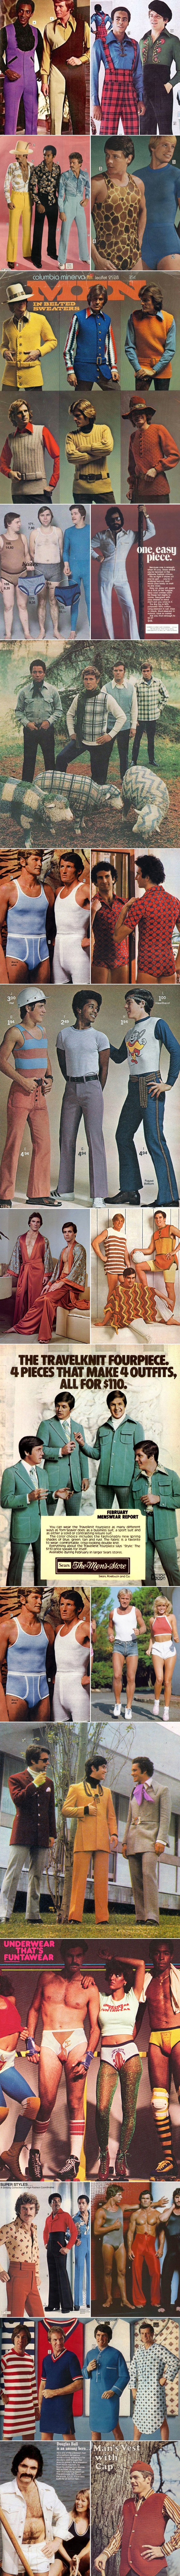 Užas muške mode '70-ih